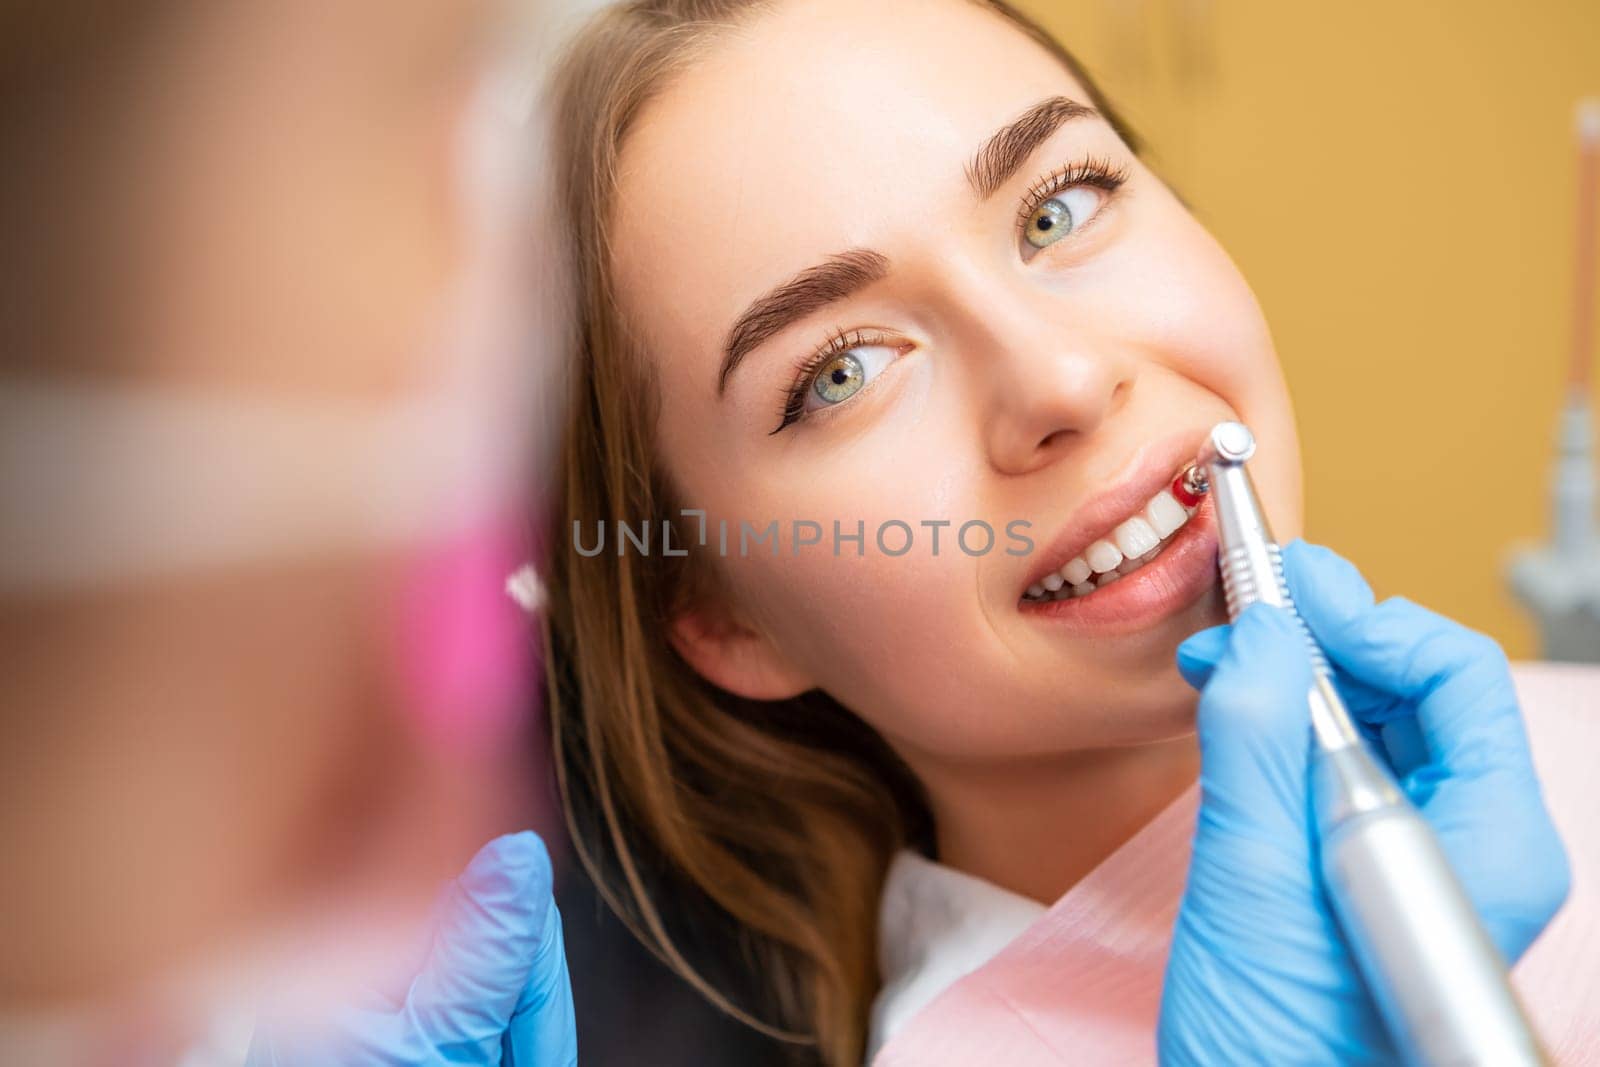 Dentist performing teeth grinding procedures in clinic by vladimka